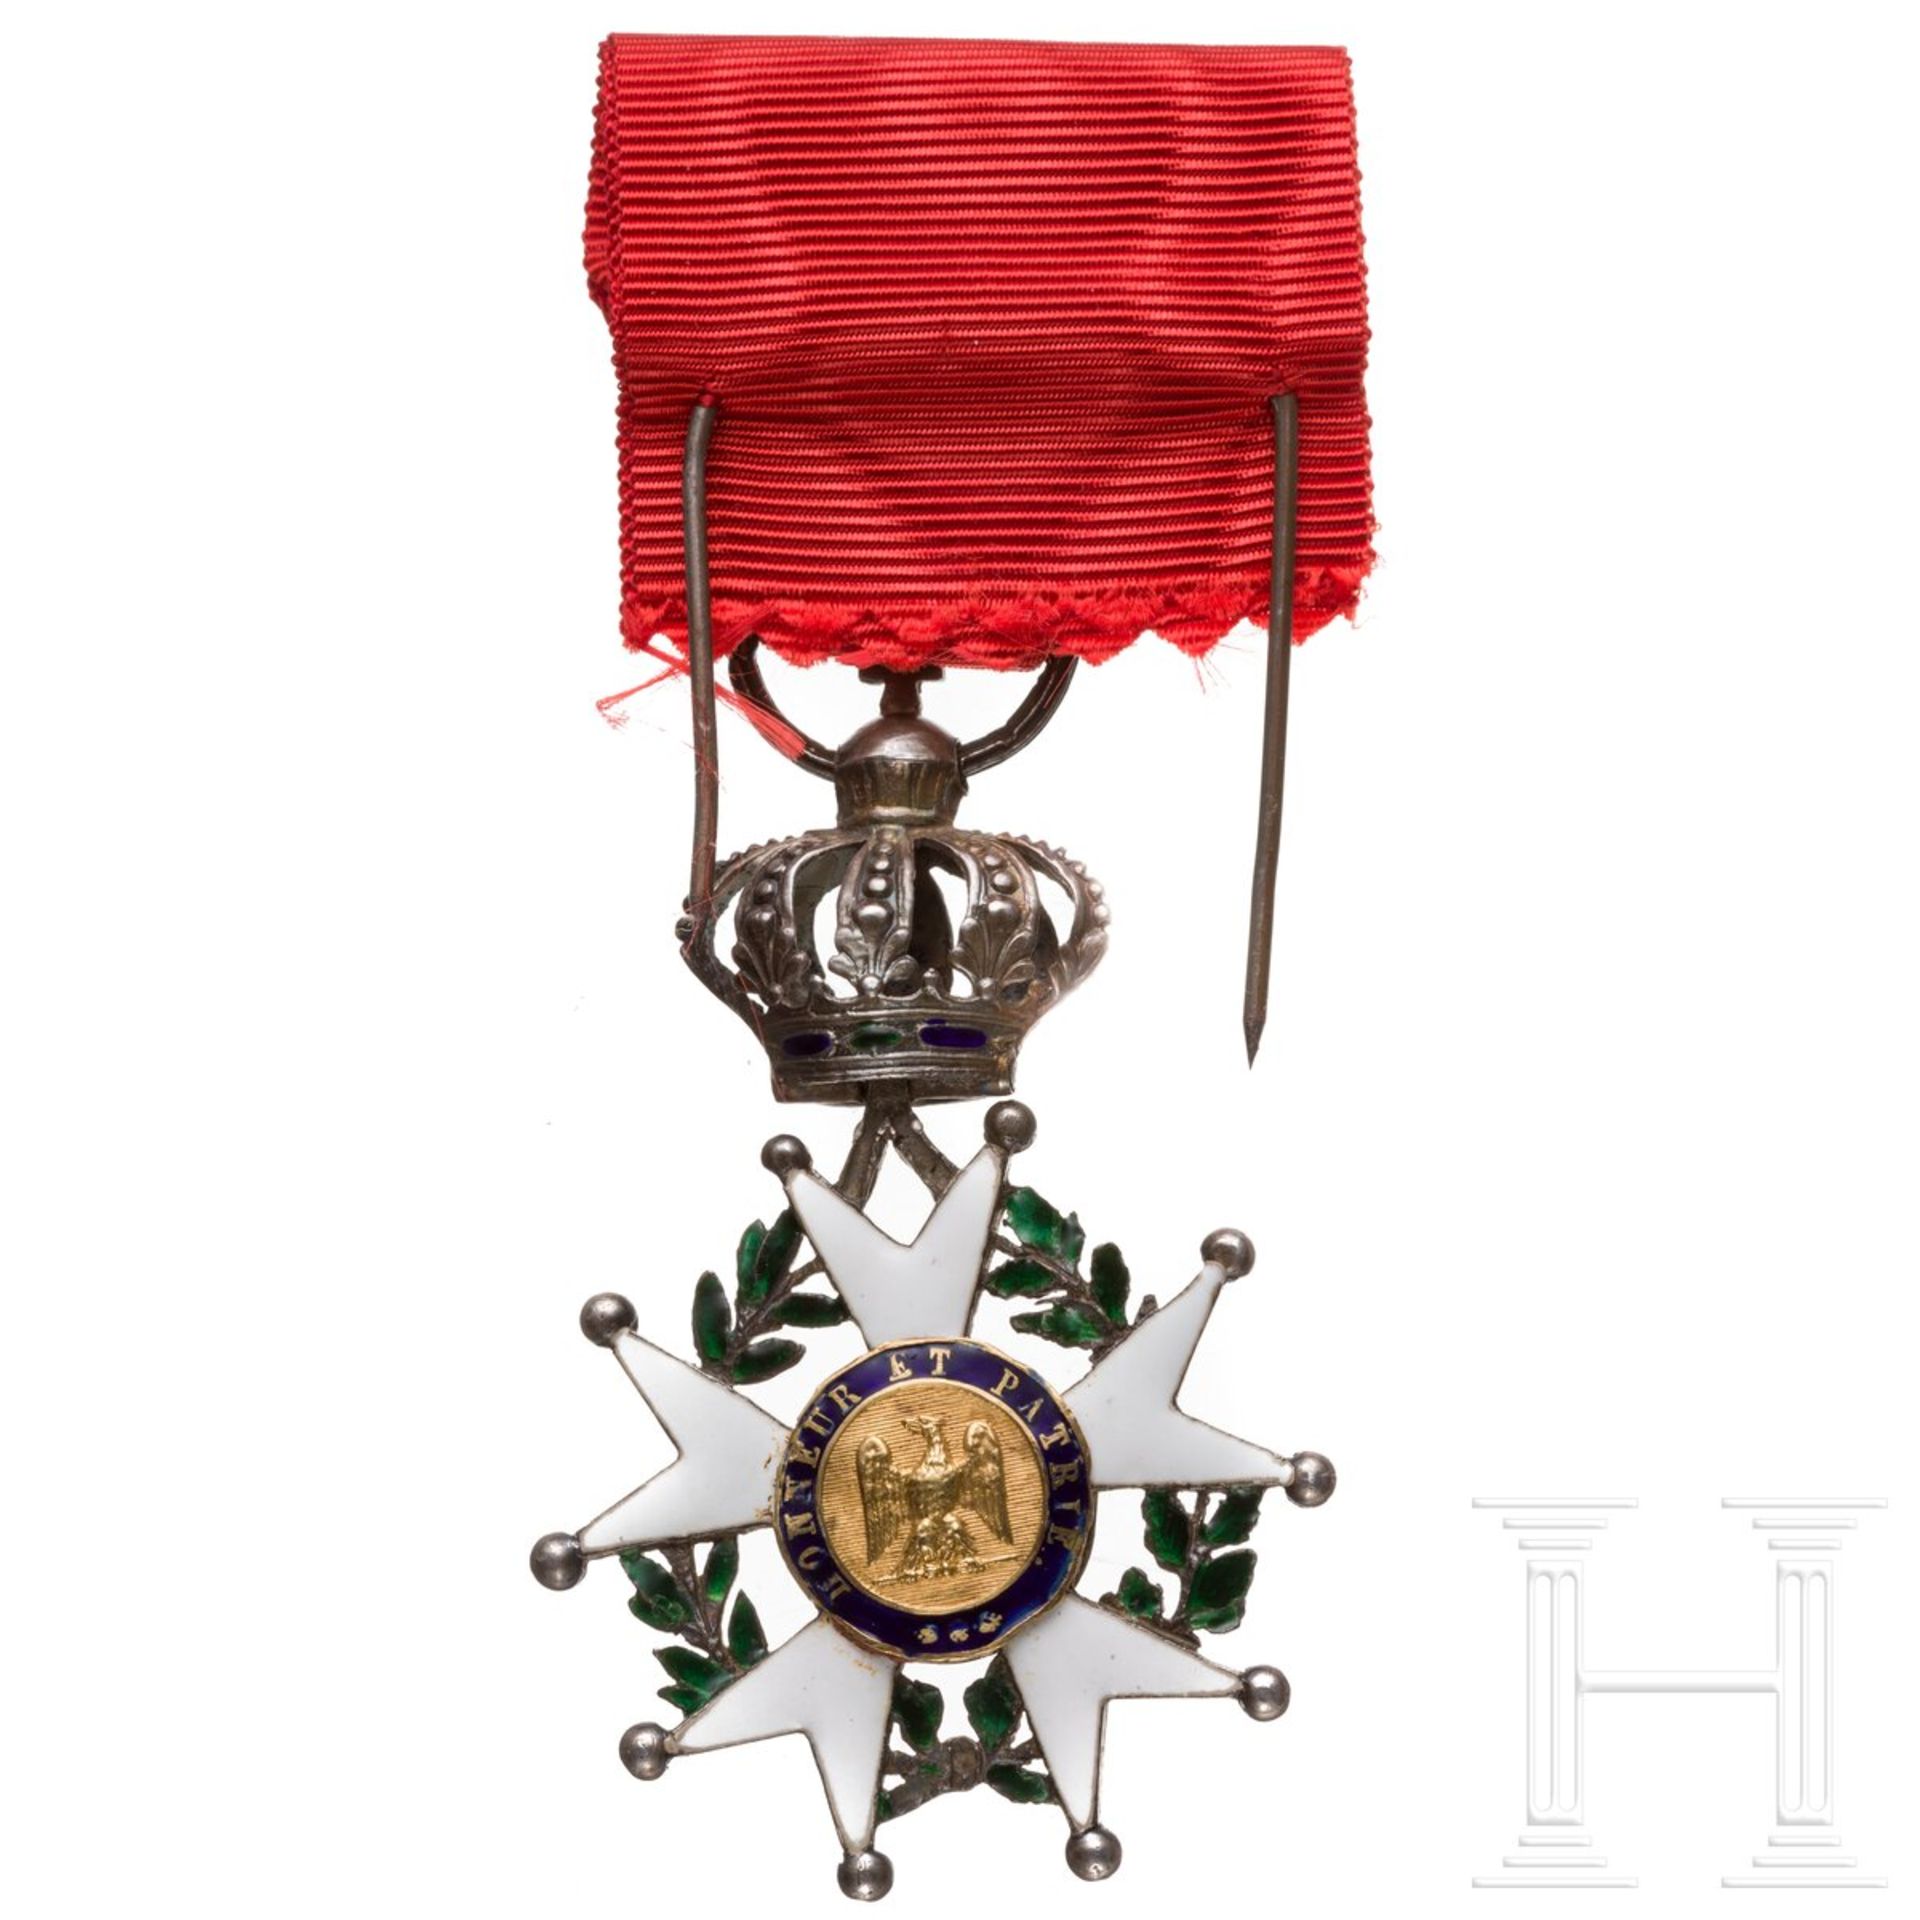 Orden der Ehrenlegion - Ritterkreuz, 19. Jhdt. - Image 2 of 4